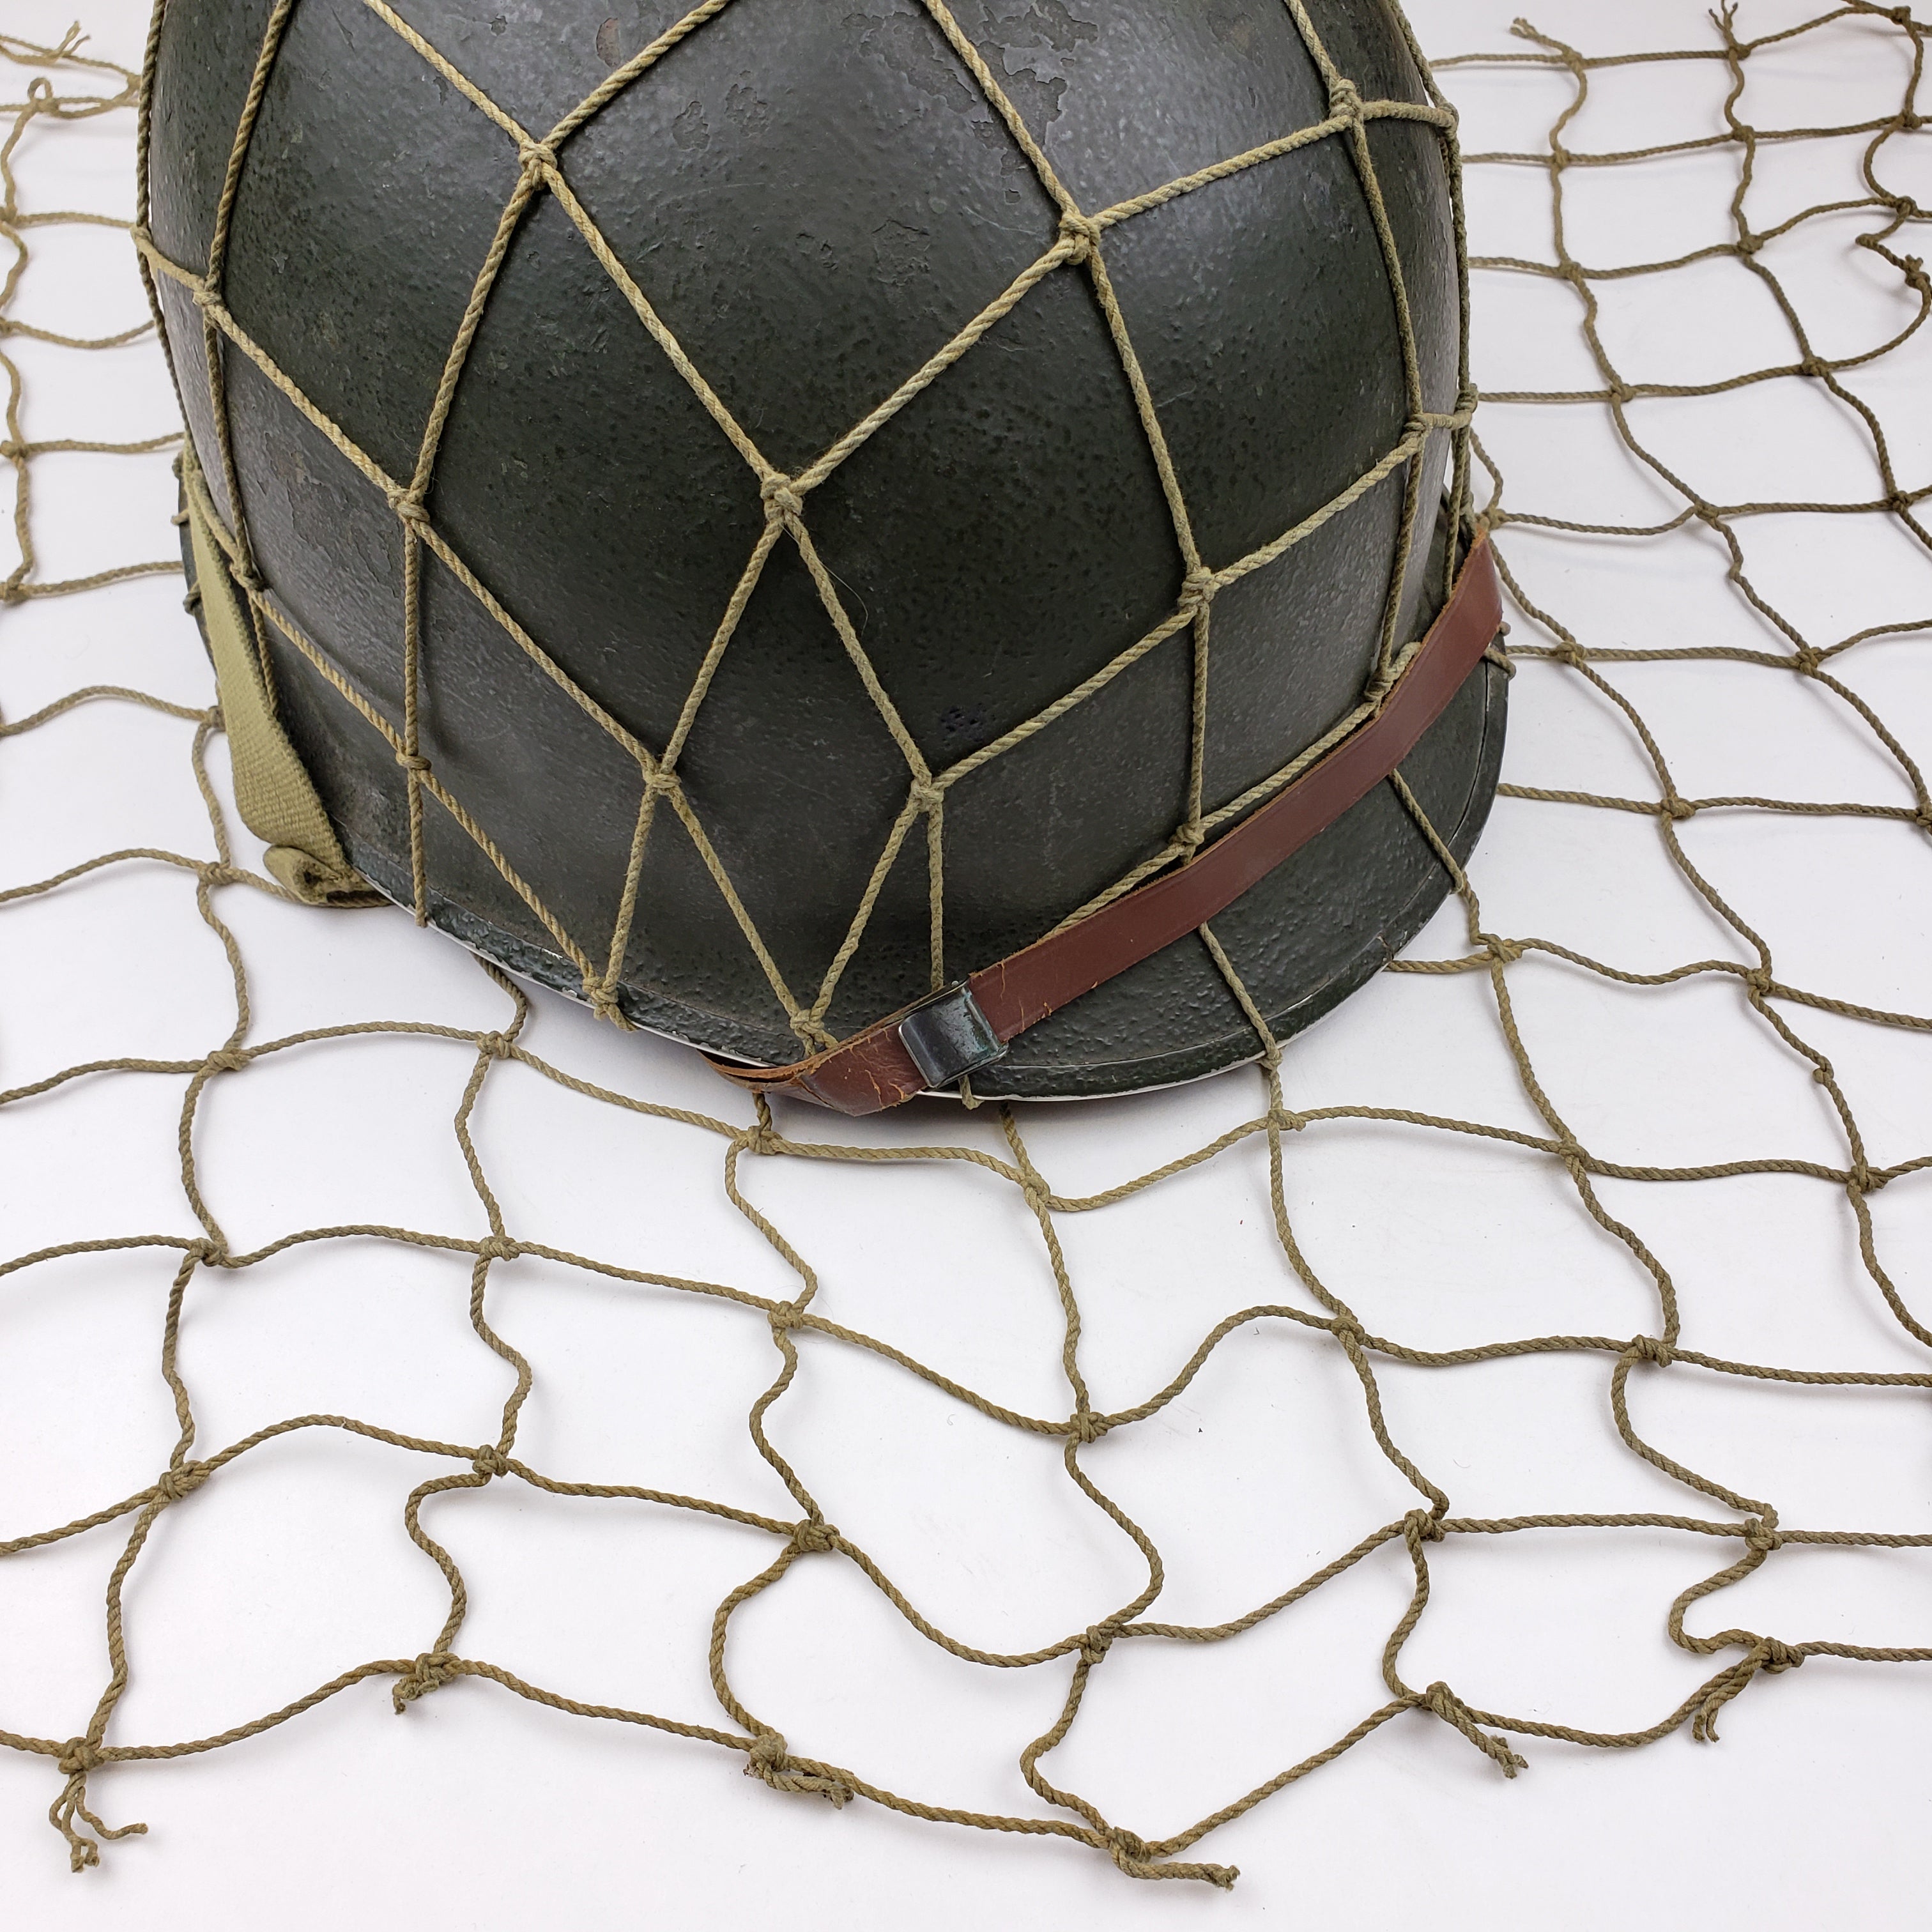 M1 Helmet Cover - 2 Square Net - Original – J. Murray Inc. 1944